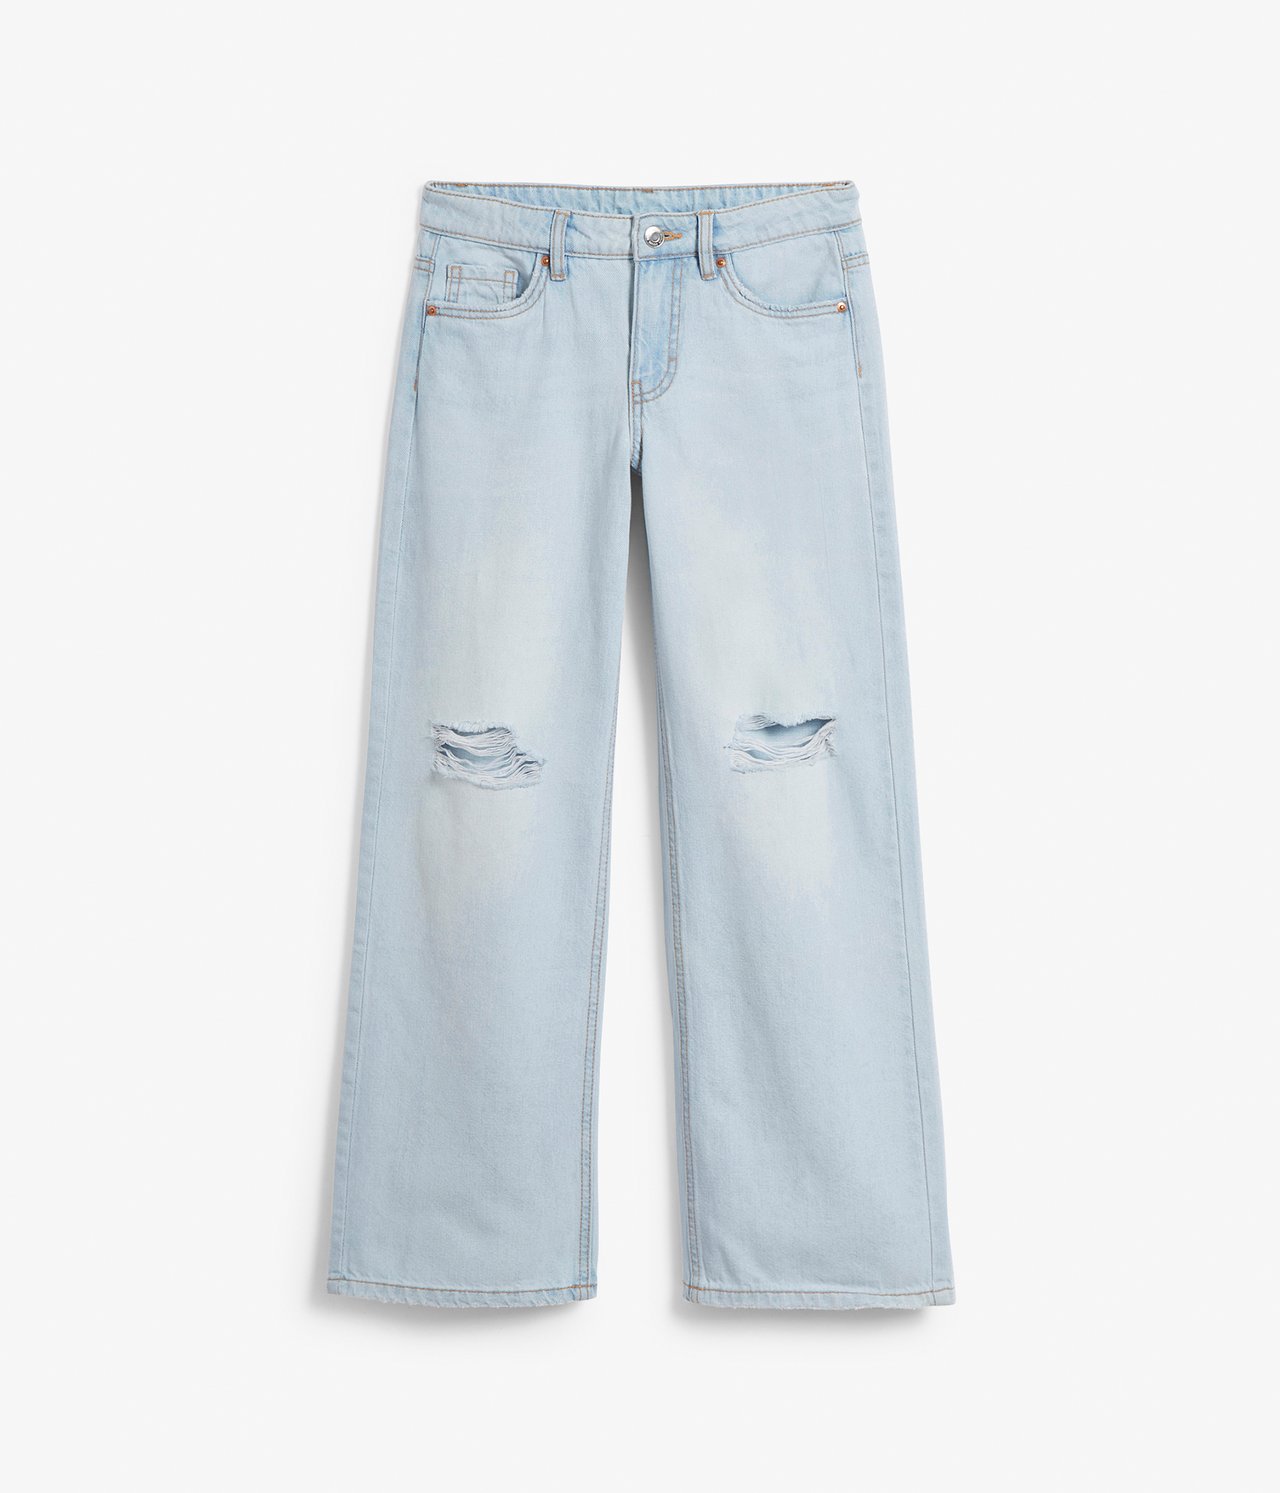 Jeans loose fit low waist - Lys denim - 8